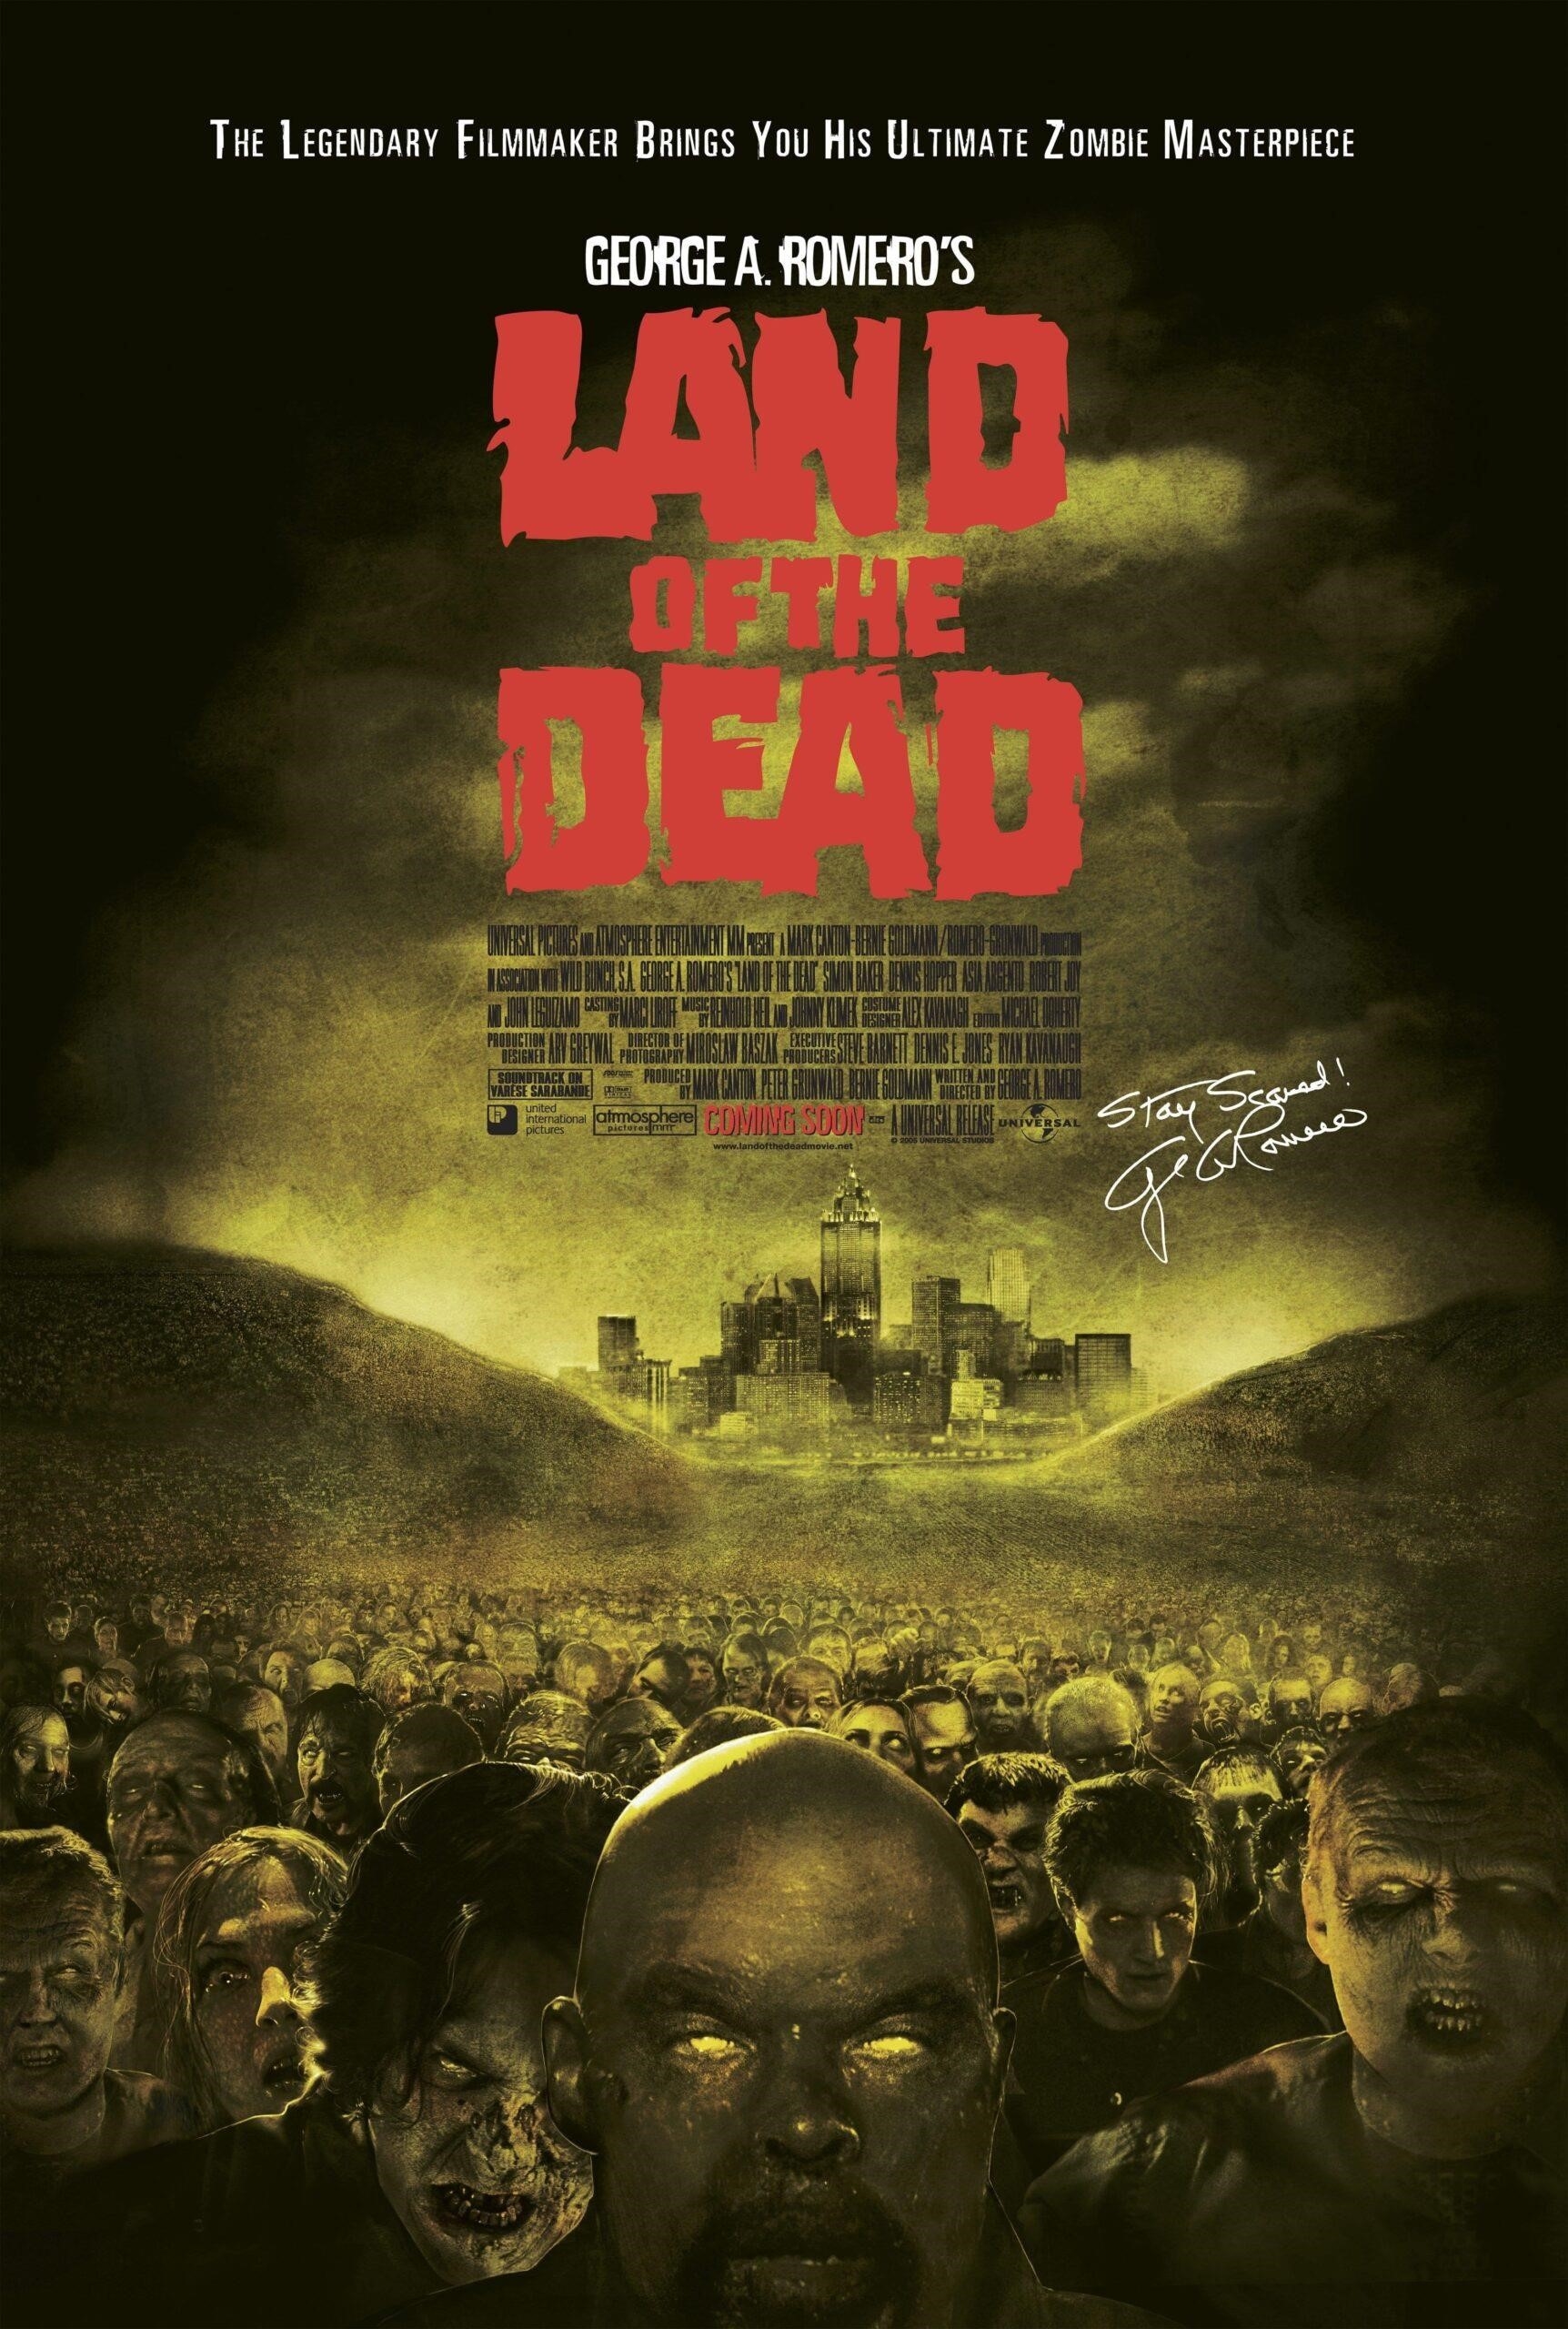 25. Land Of The Dead: là một bộ phim kinh dị do đạo diễn George A. Romero sản xuất, xoay quanh cuộc sống sau khi thế giới bị xâm chiếm bởi các xác sống chết, nơi những người sống sót phải chiến đấu để tồn tại và tìm kiếm một nơi an toàn để sinh sống.